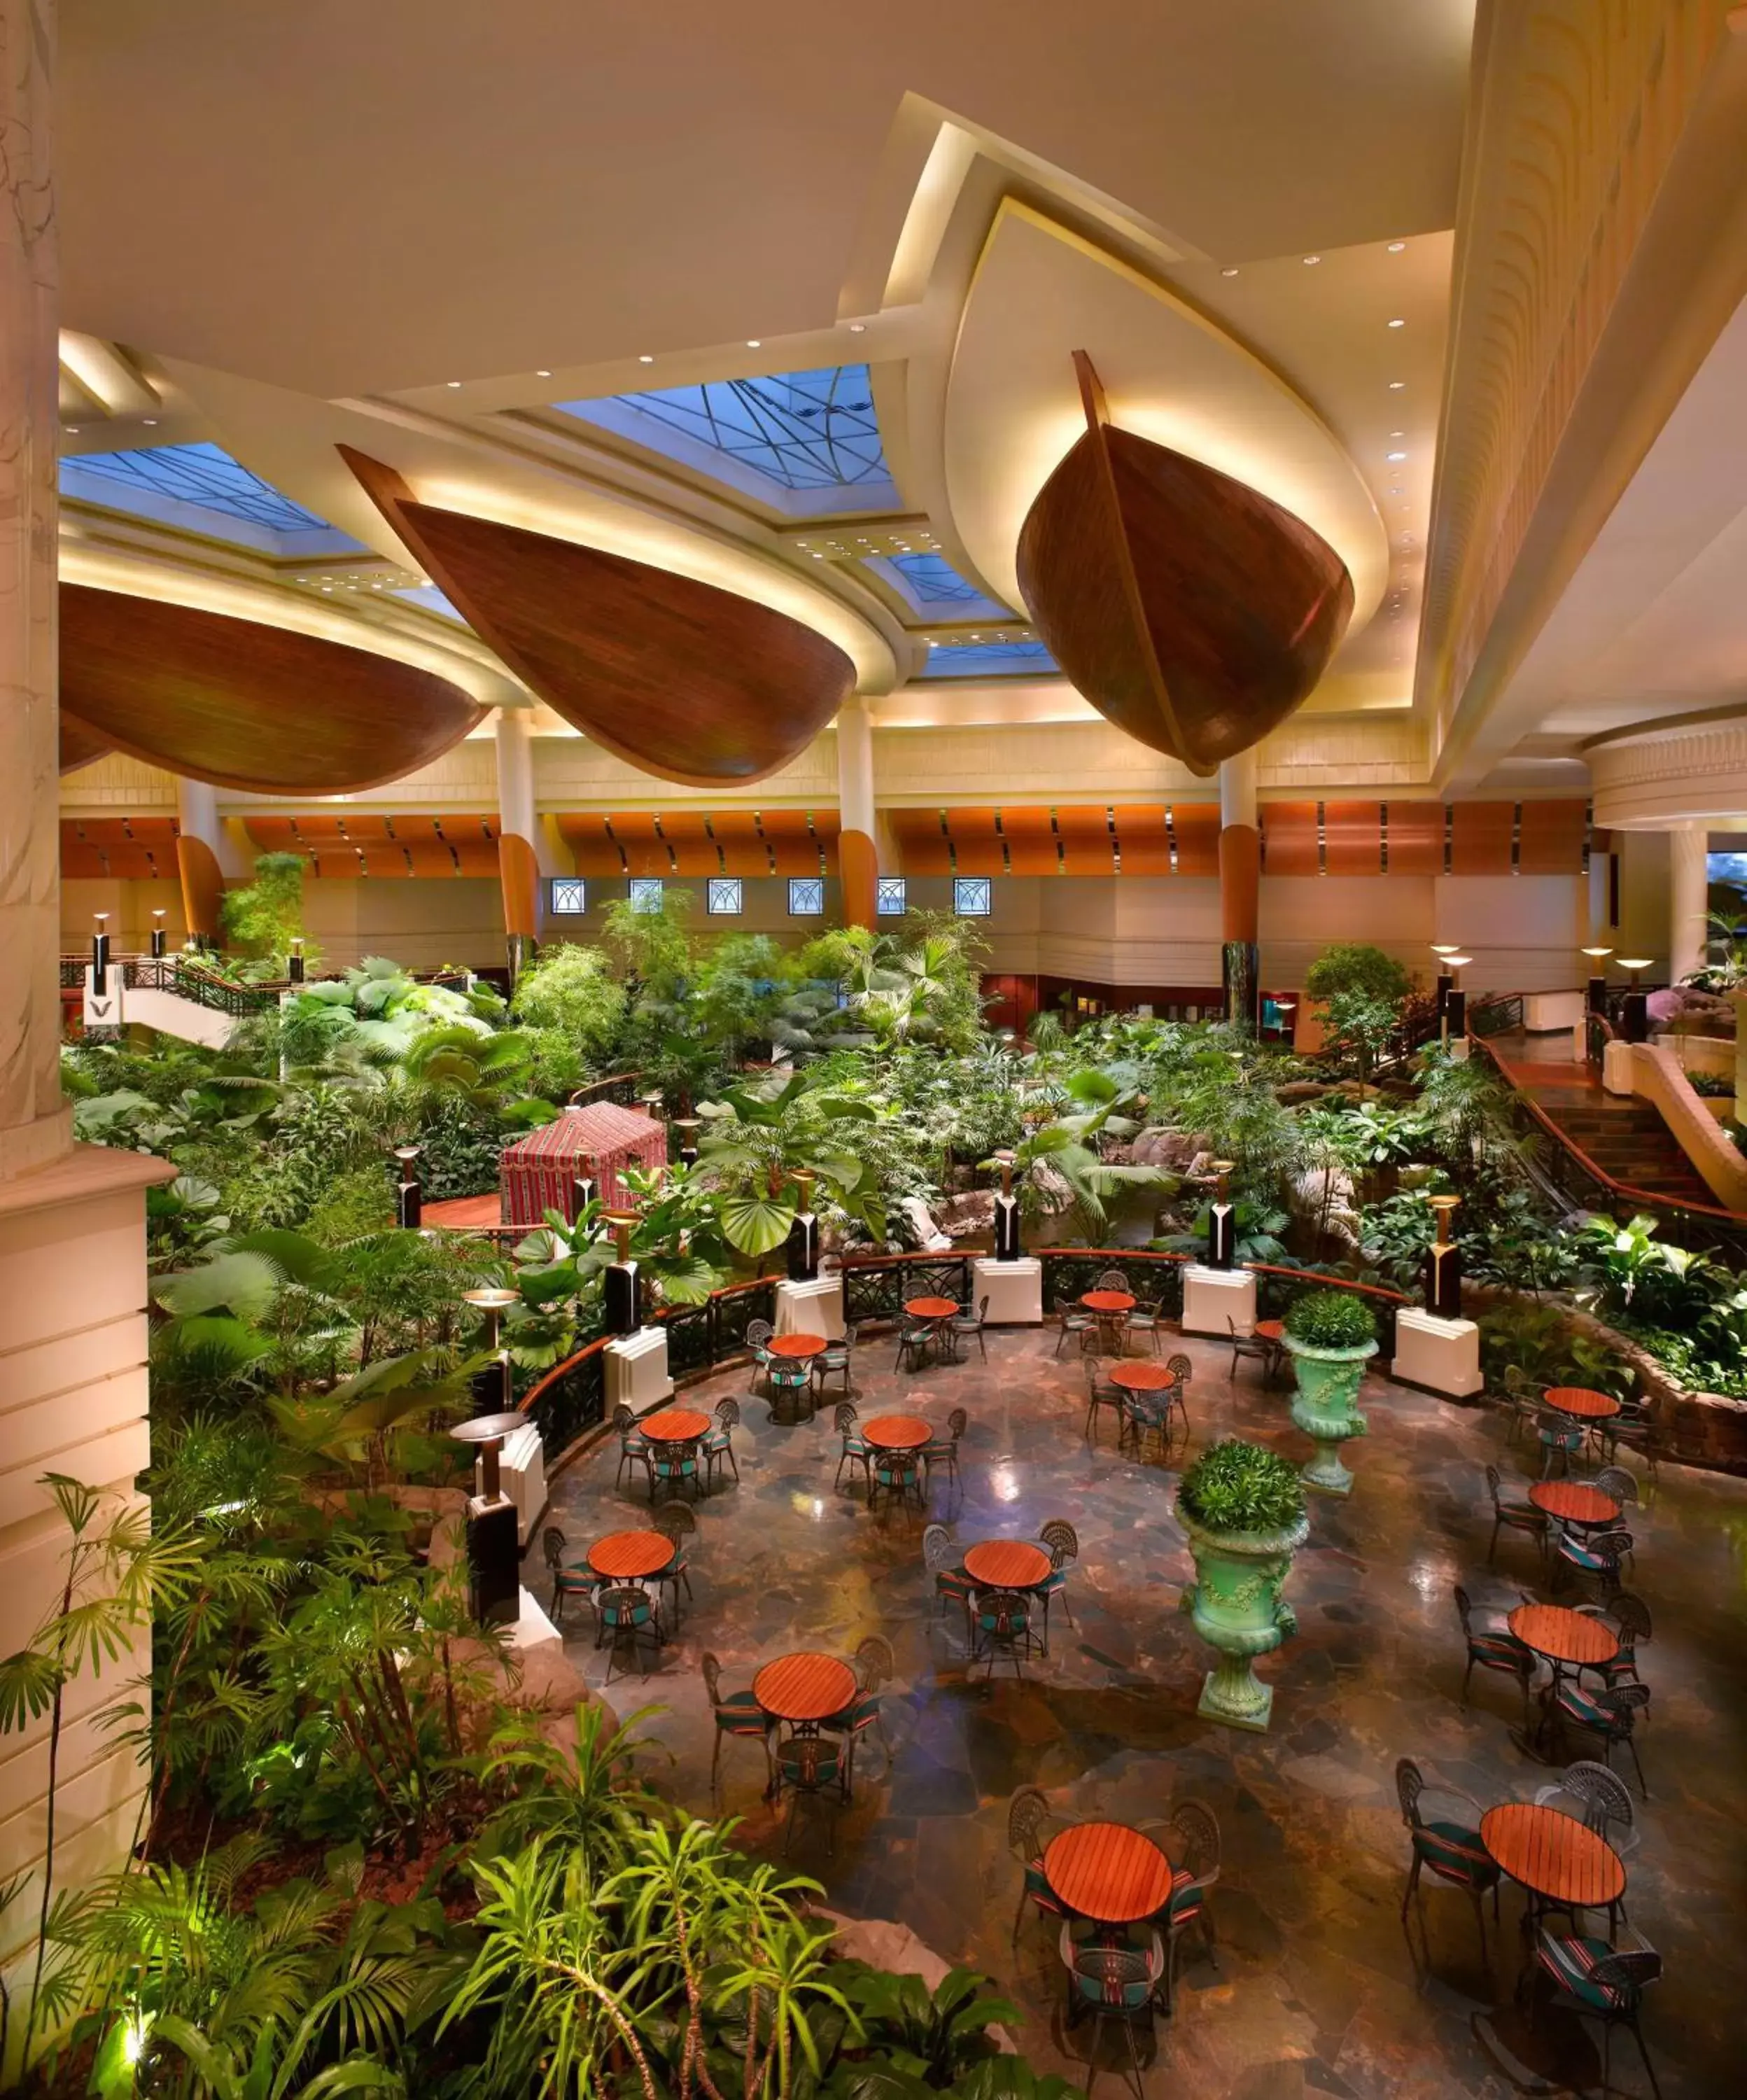 Restaurant/places to eat in Grand Hyatt Dubai